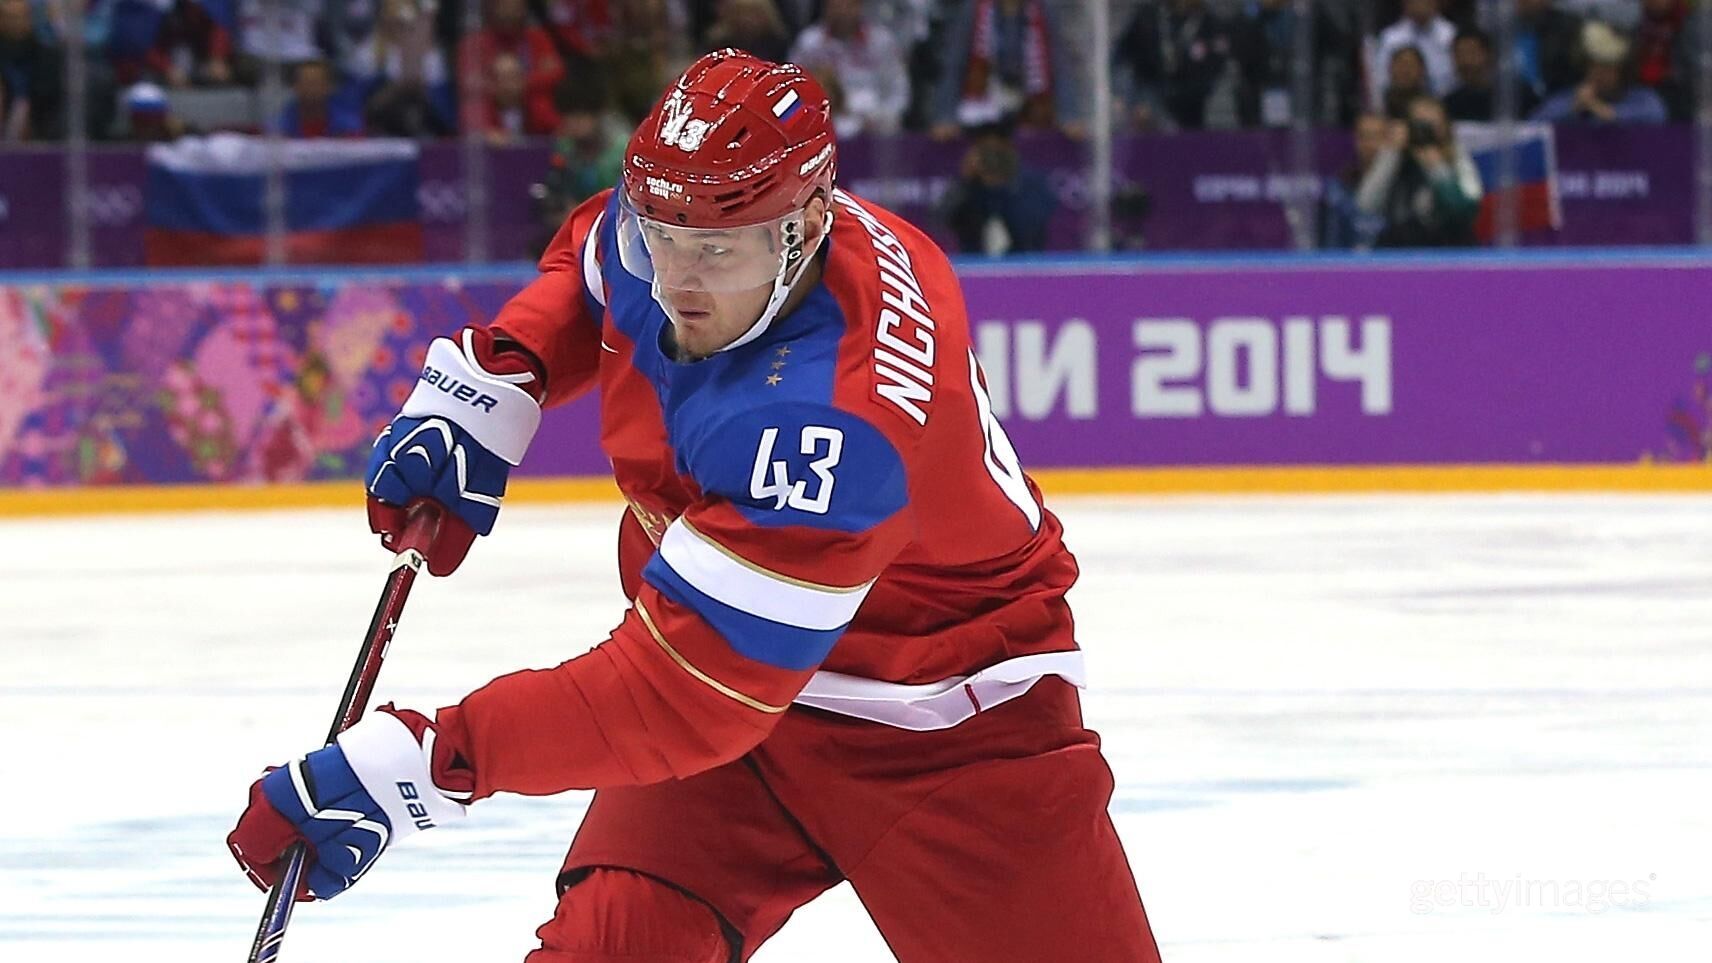 Российский хоккеист назвал Олимпиаду в Сочи главным разочарованием в жизни, не забыв упомянуть Путина